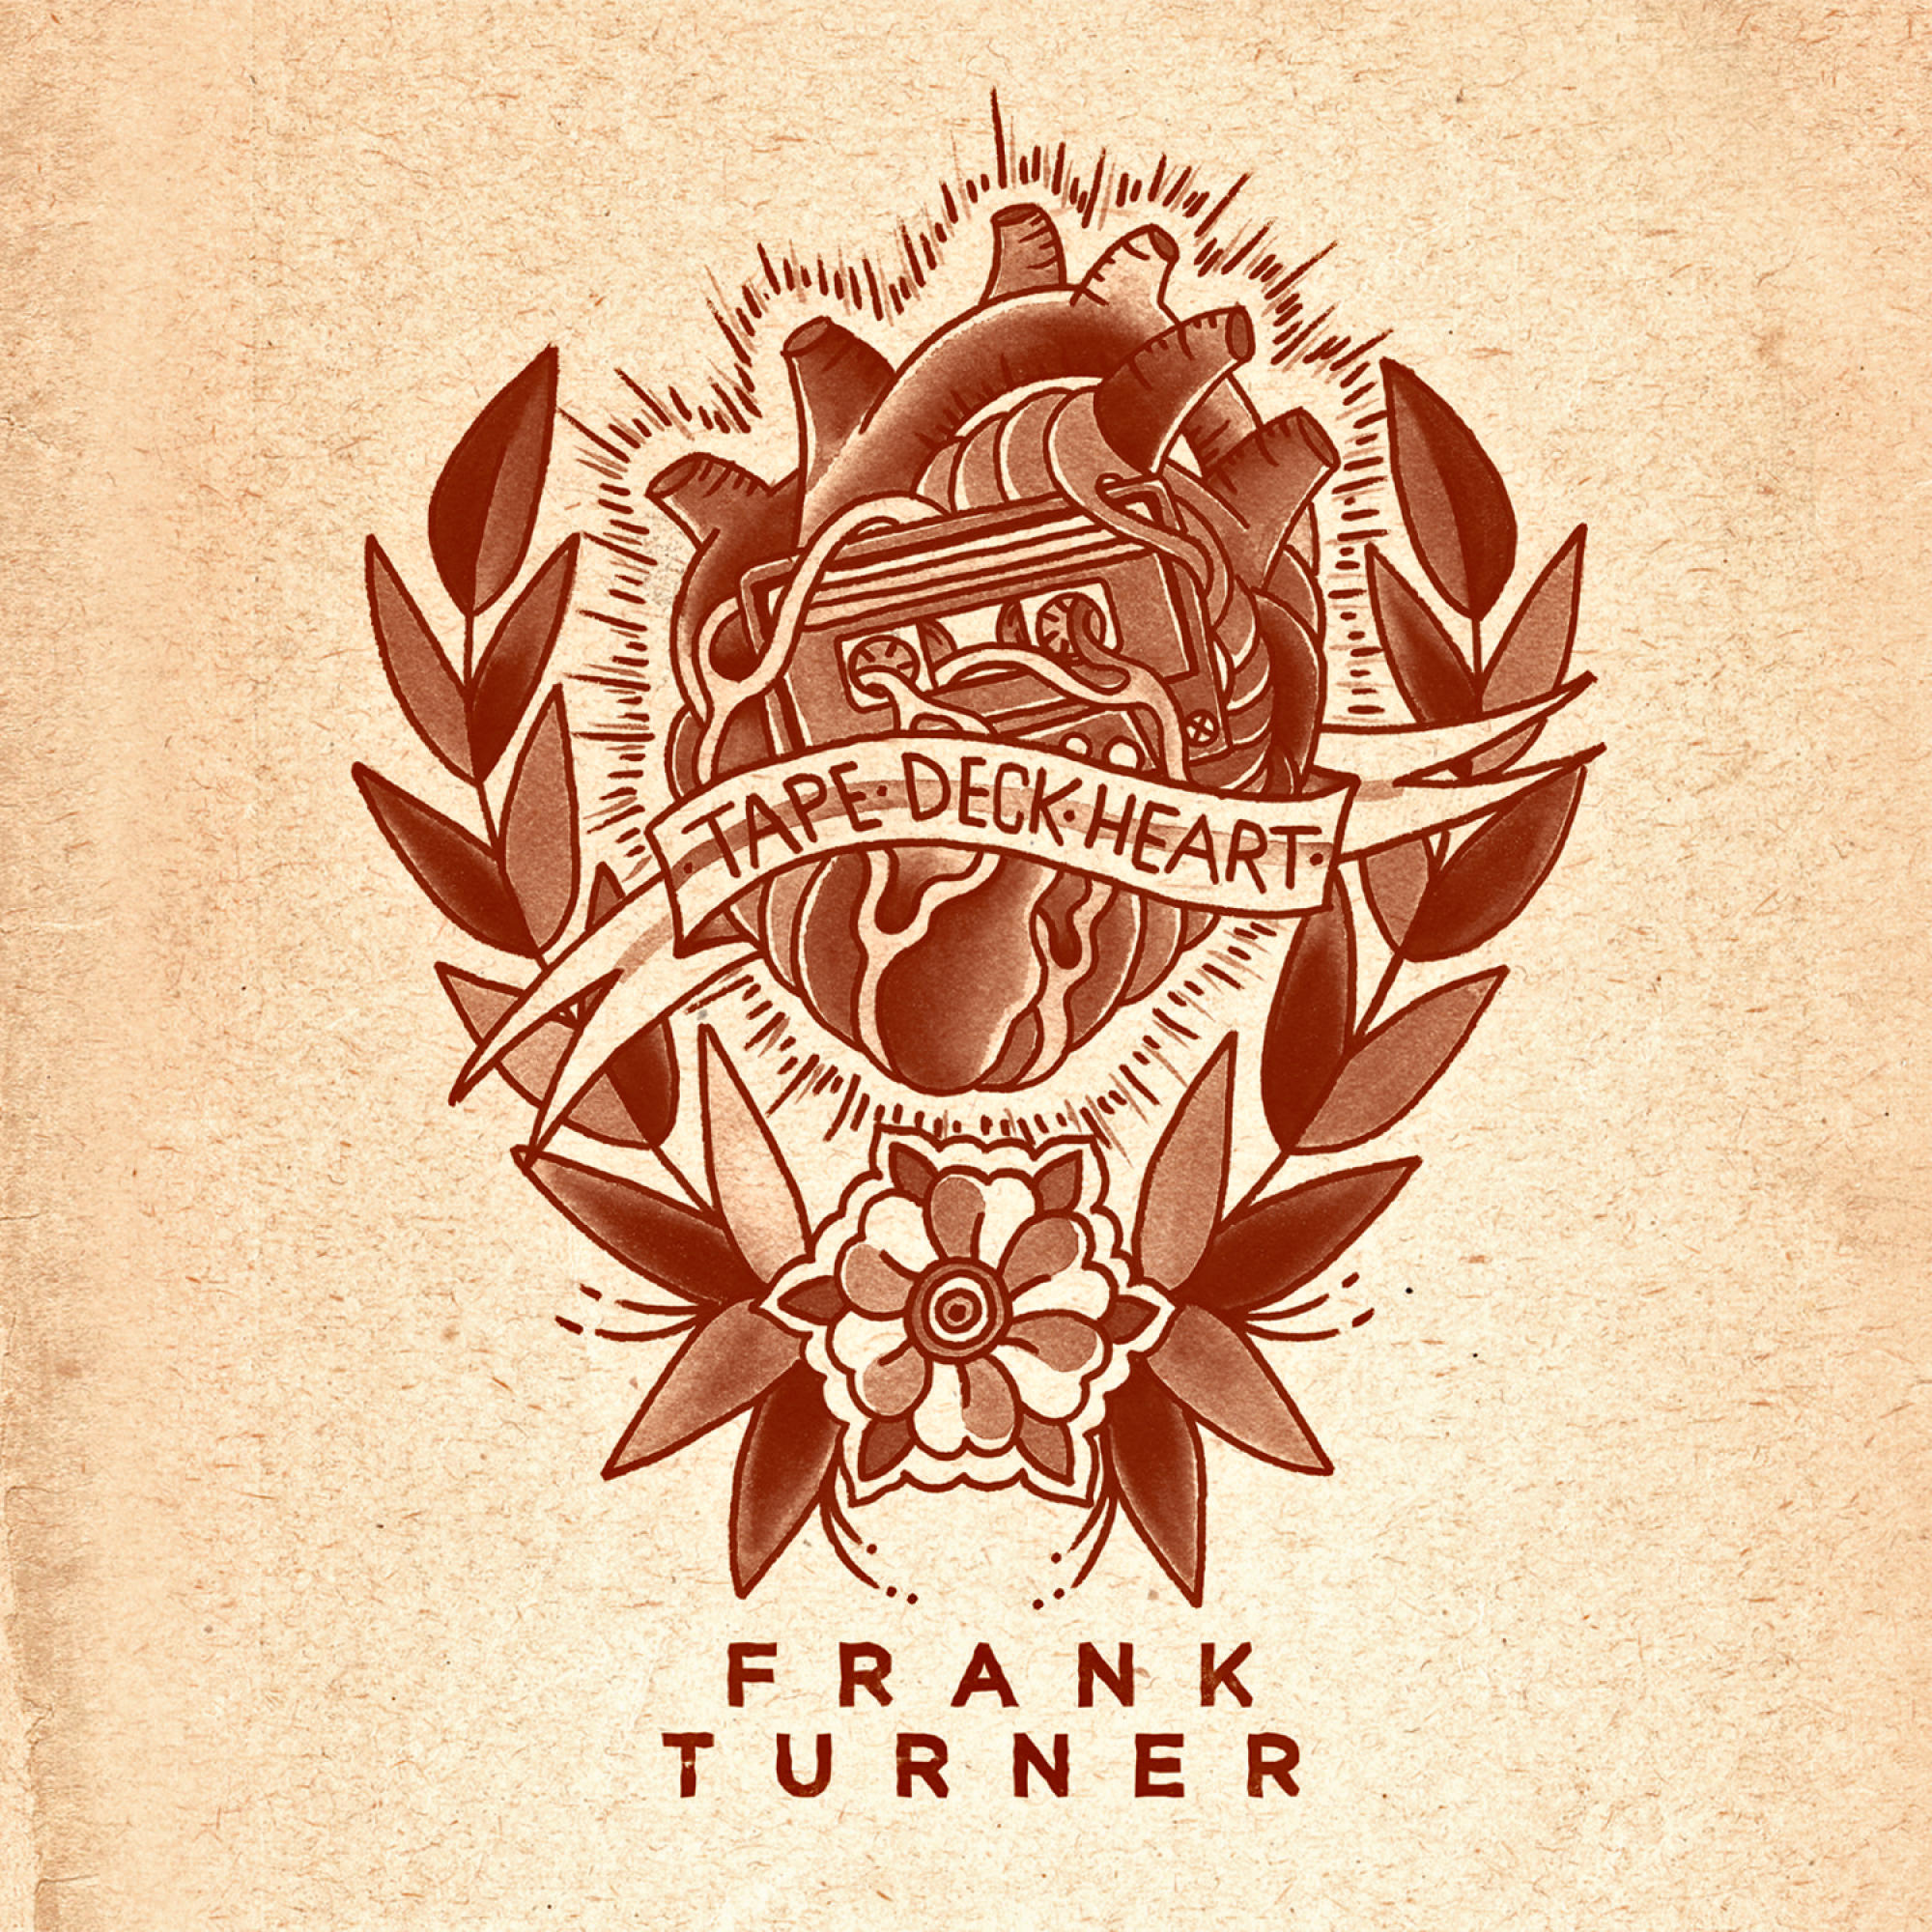 Frank Turner - - HEART DECK (CD) TAPE